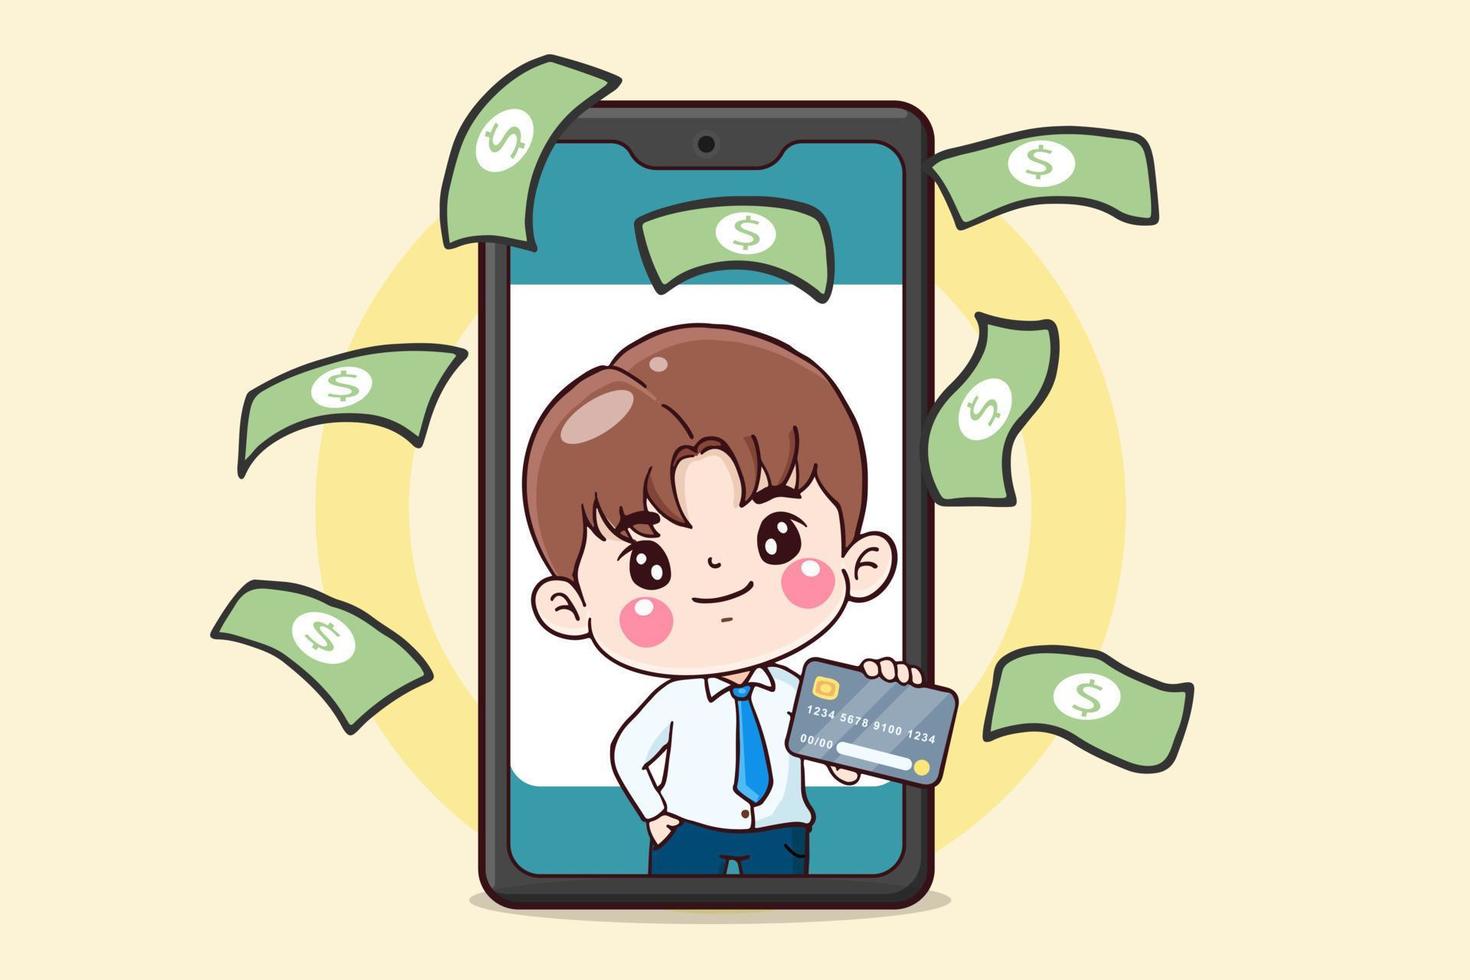 personaje de dibujos animados hombre de negocios con tarjeta de crédito en el teléfono móvil, concepto financiero, ilustración plana vector